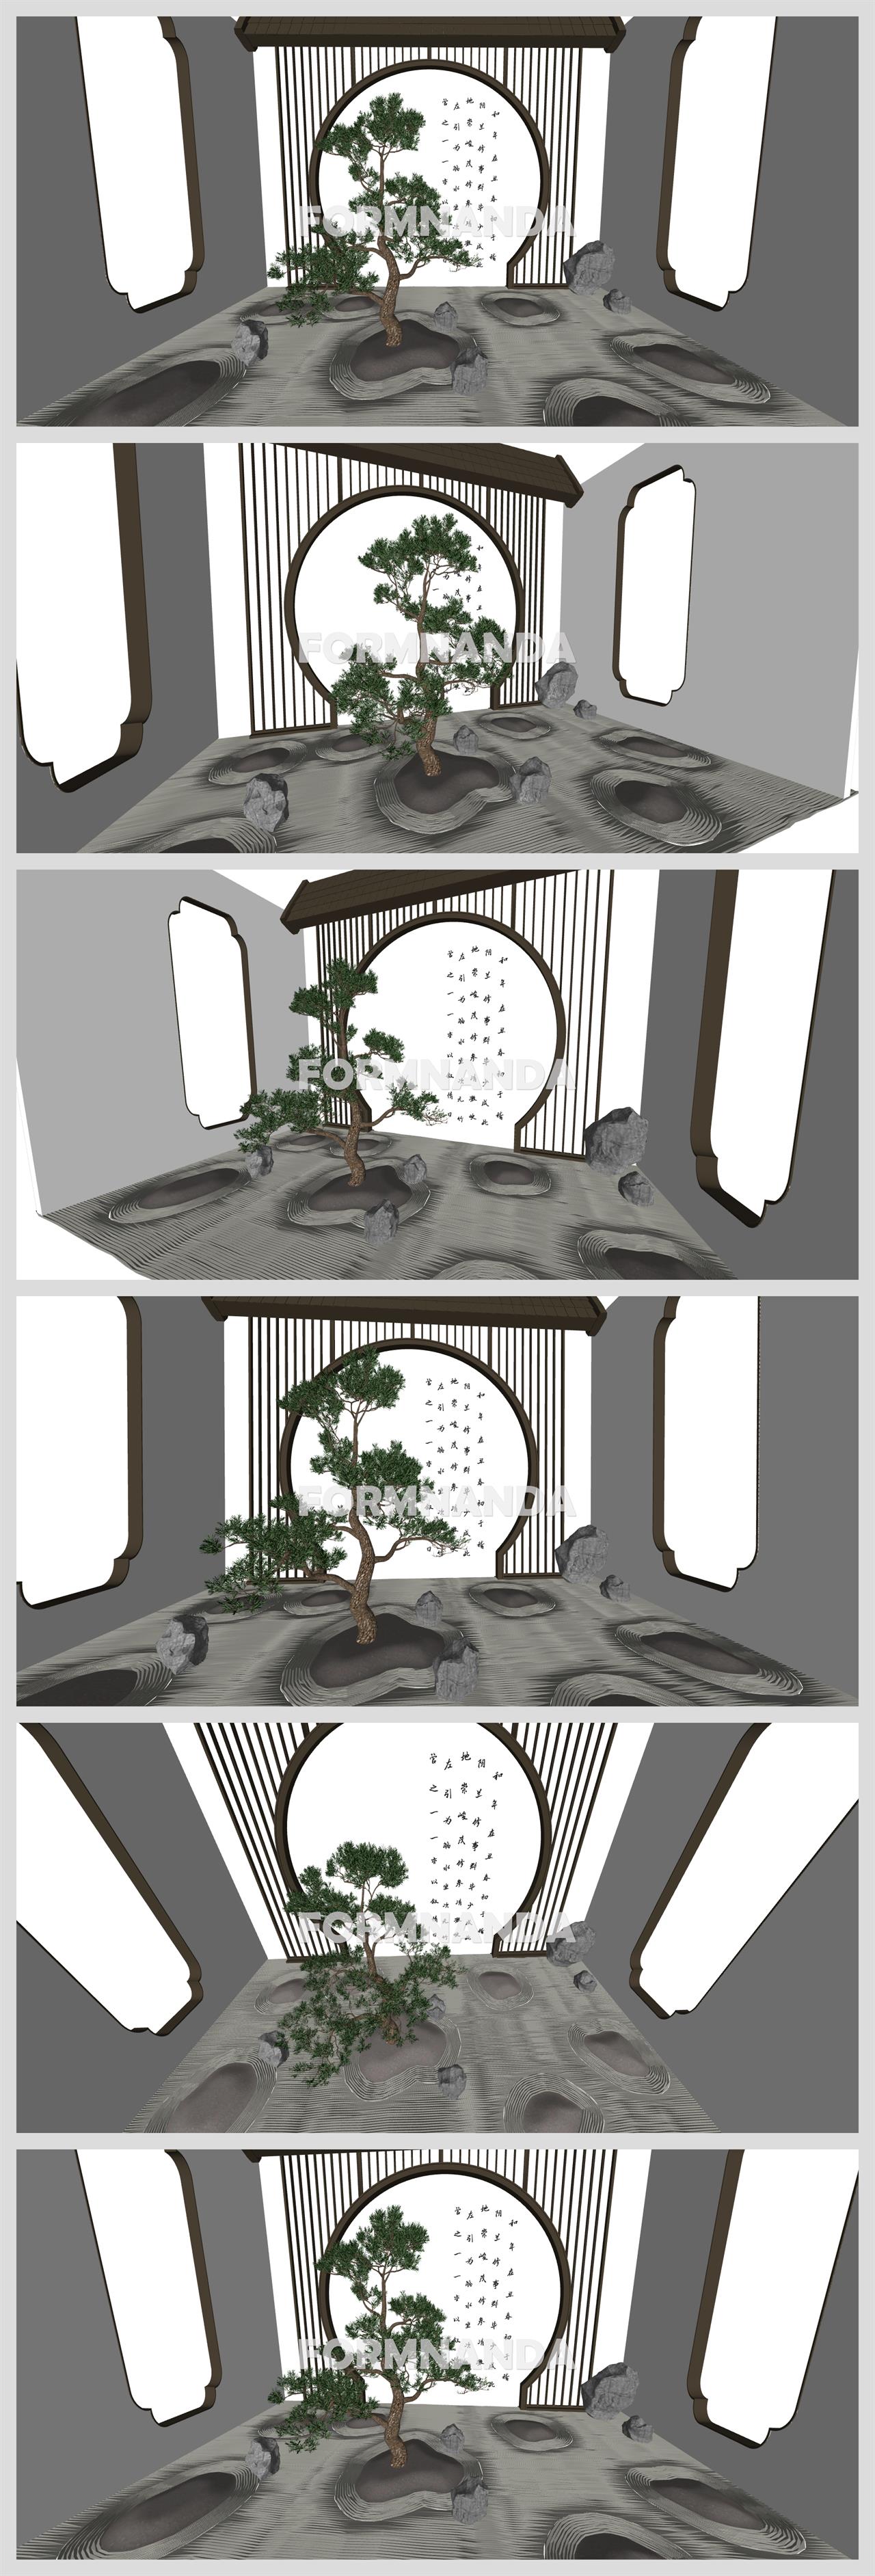 손쉬운 정원조경 환경 Sketchup 모델 만들기 상세보기